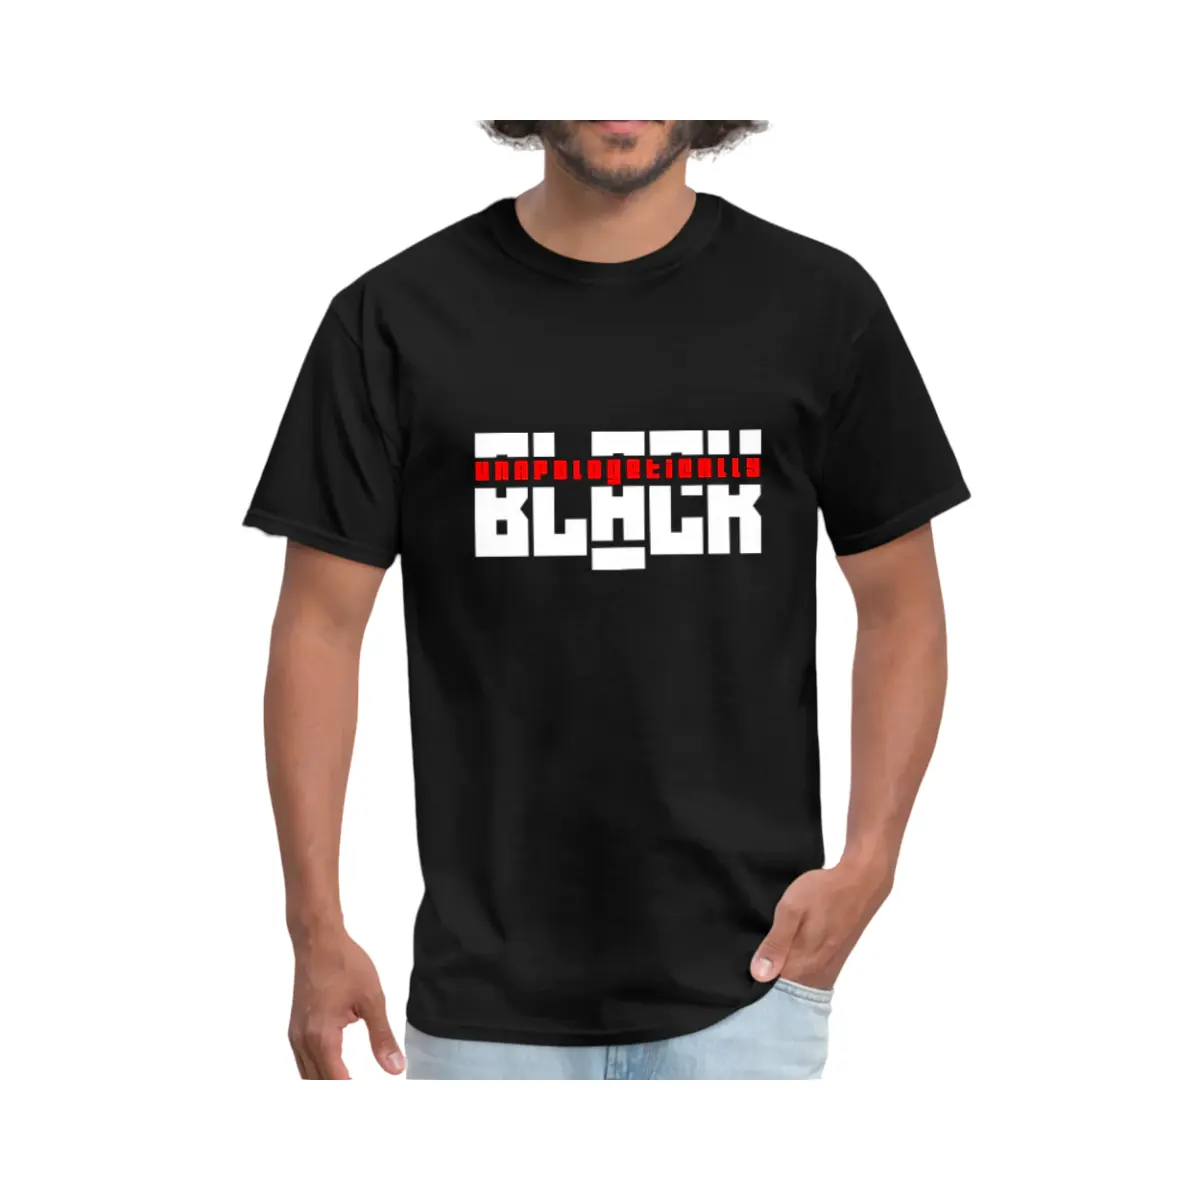 Yeni tasarım erkek hafif pamuklu tişört Unapologetically siyah desen özel tasarım pamuklu t-shirt adam